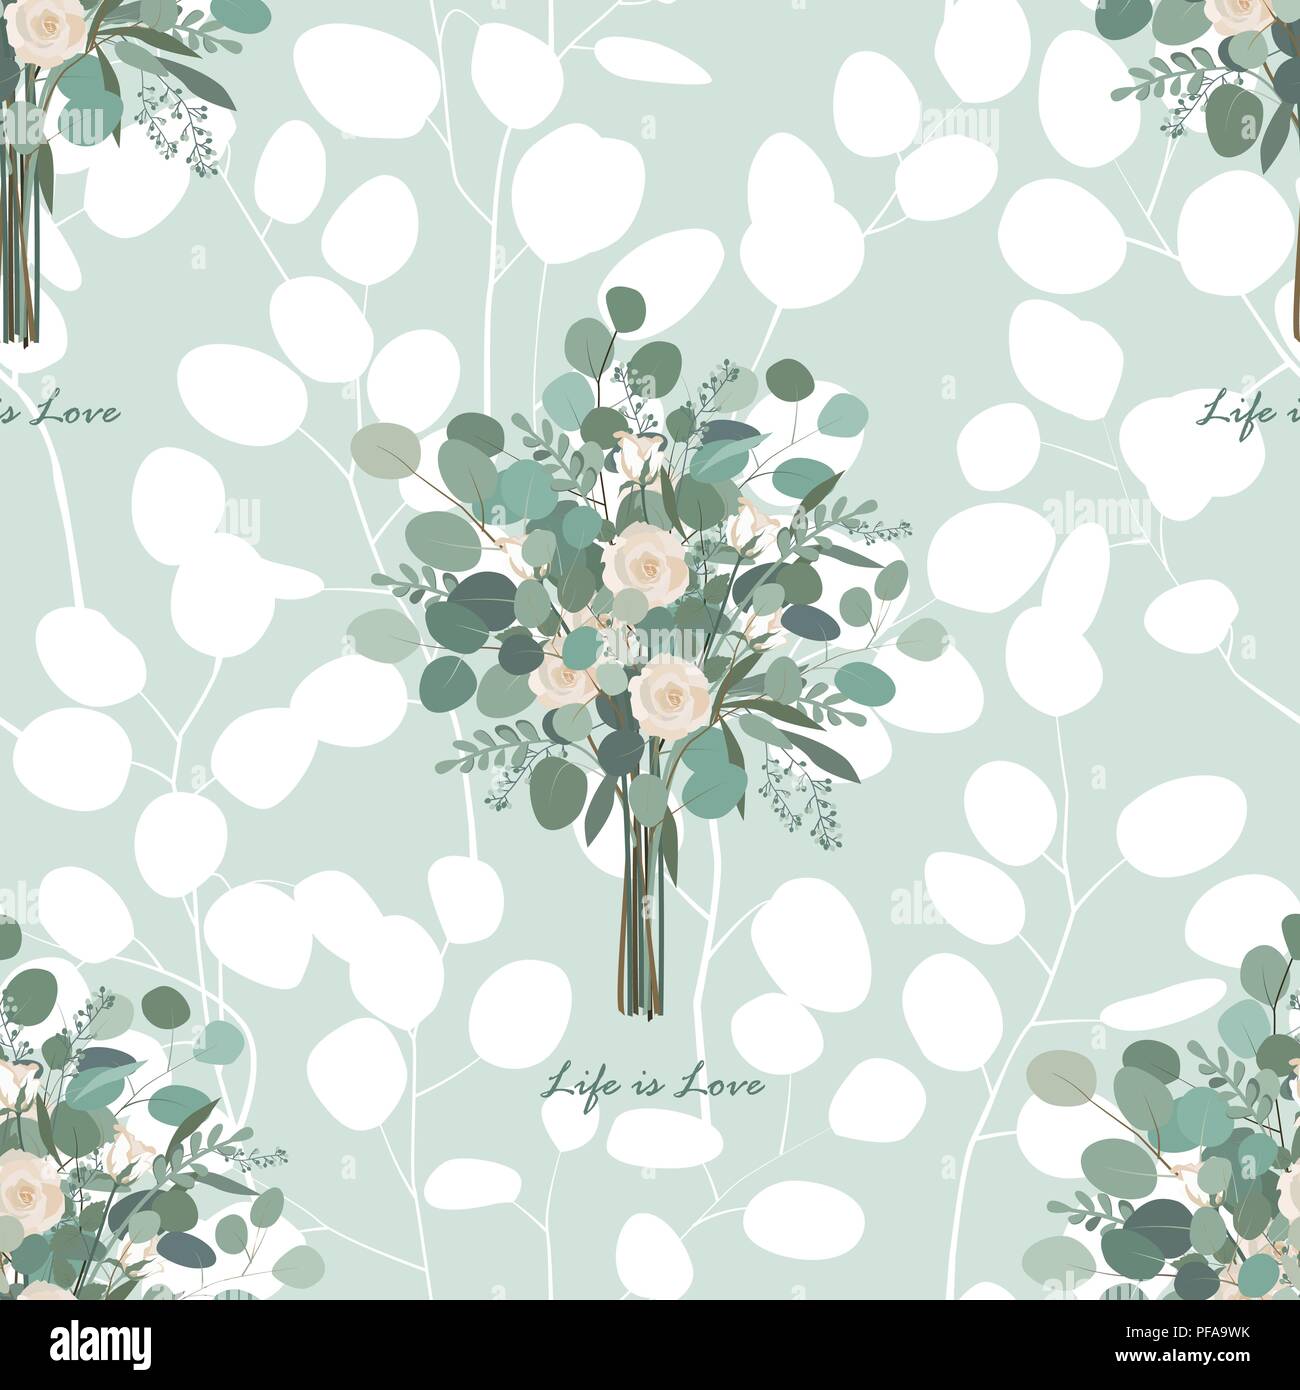 Rosen und Eukalyptus Blätter nahtlose Vektor Muster. Vector Illustration Stock Vektor